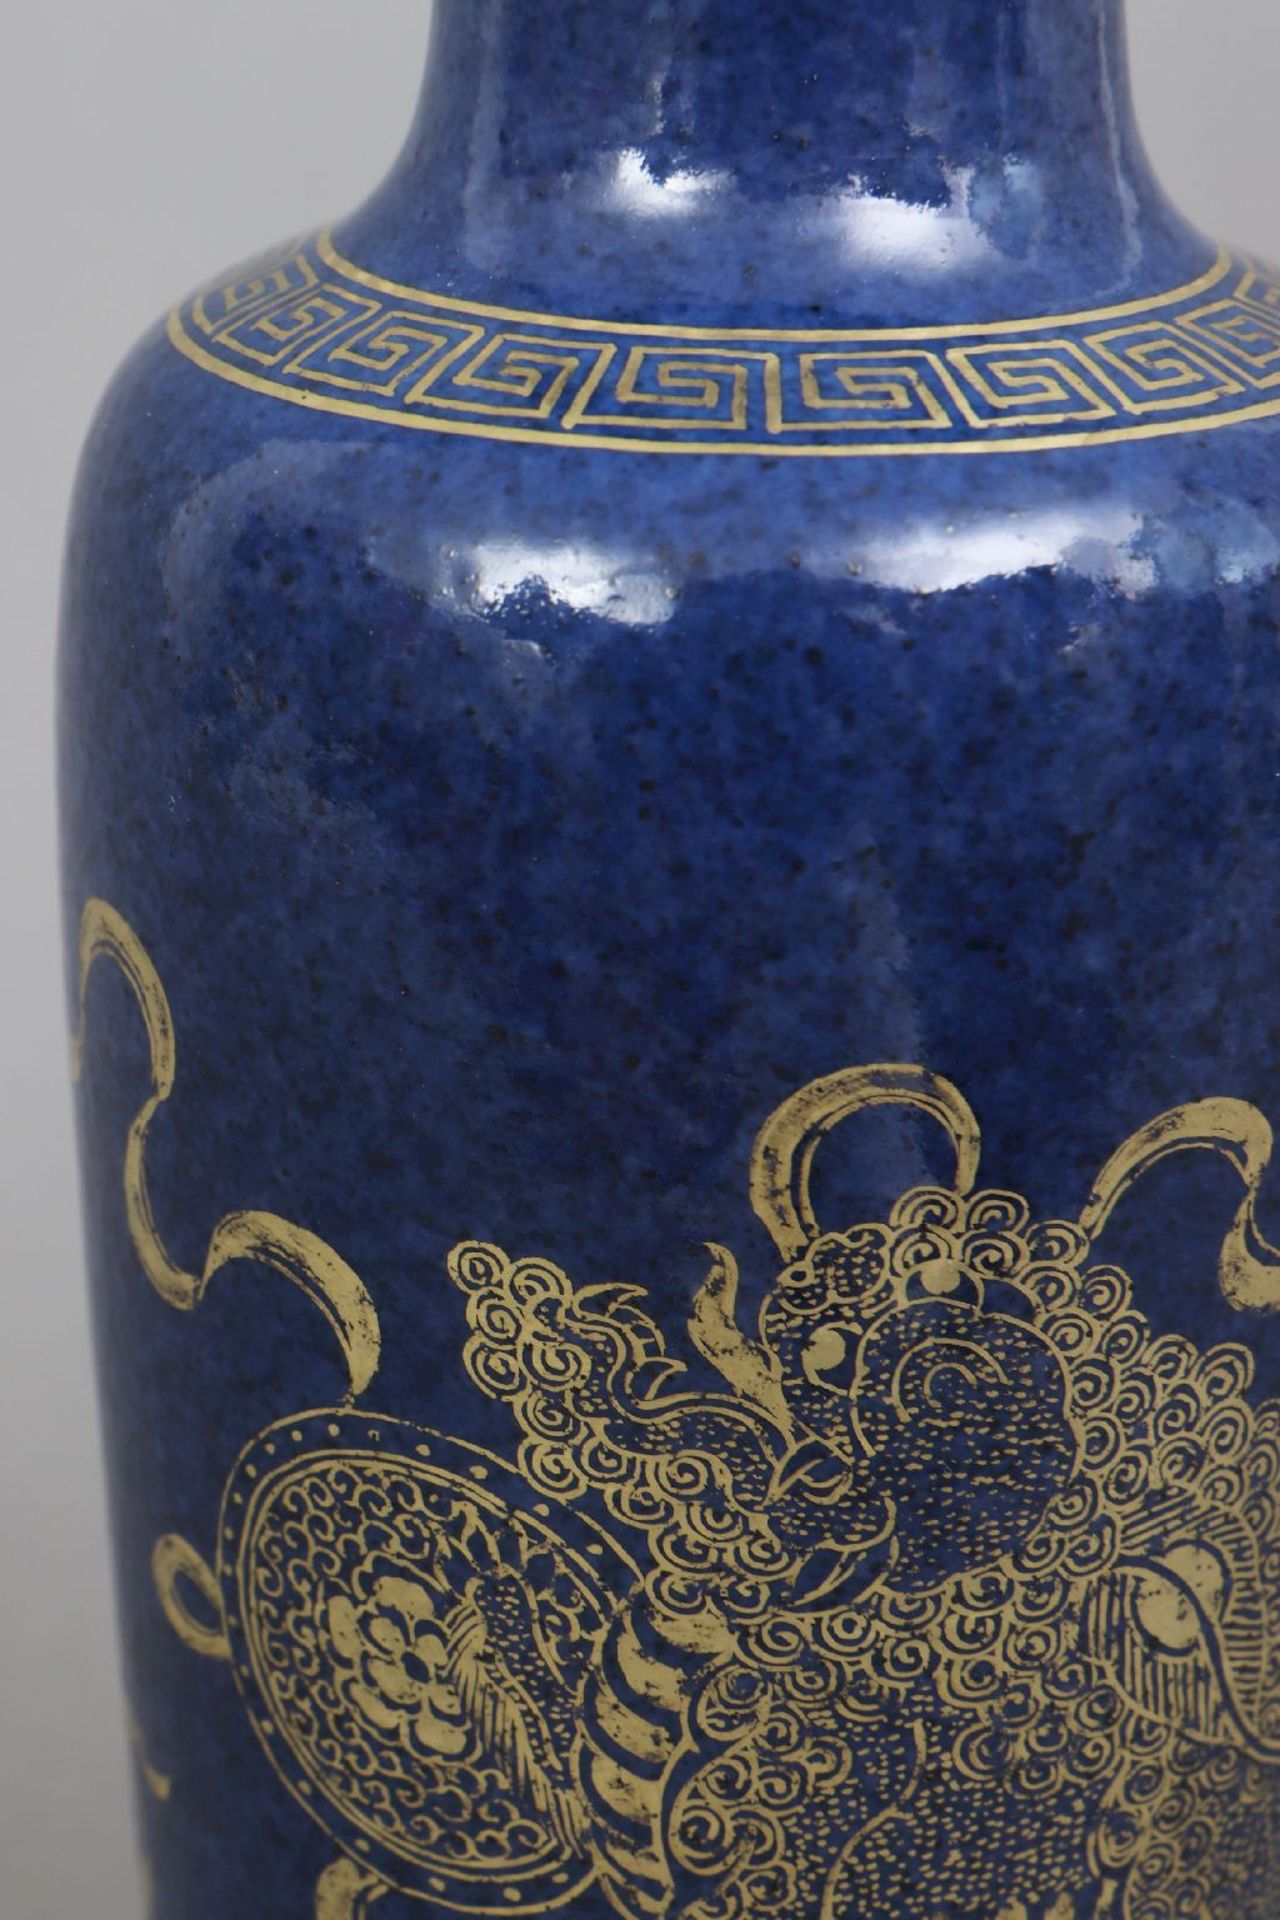 Chinesische Porzellanvase mit powder-blue Glasur - Image 3 of 6